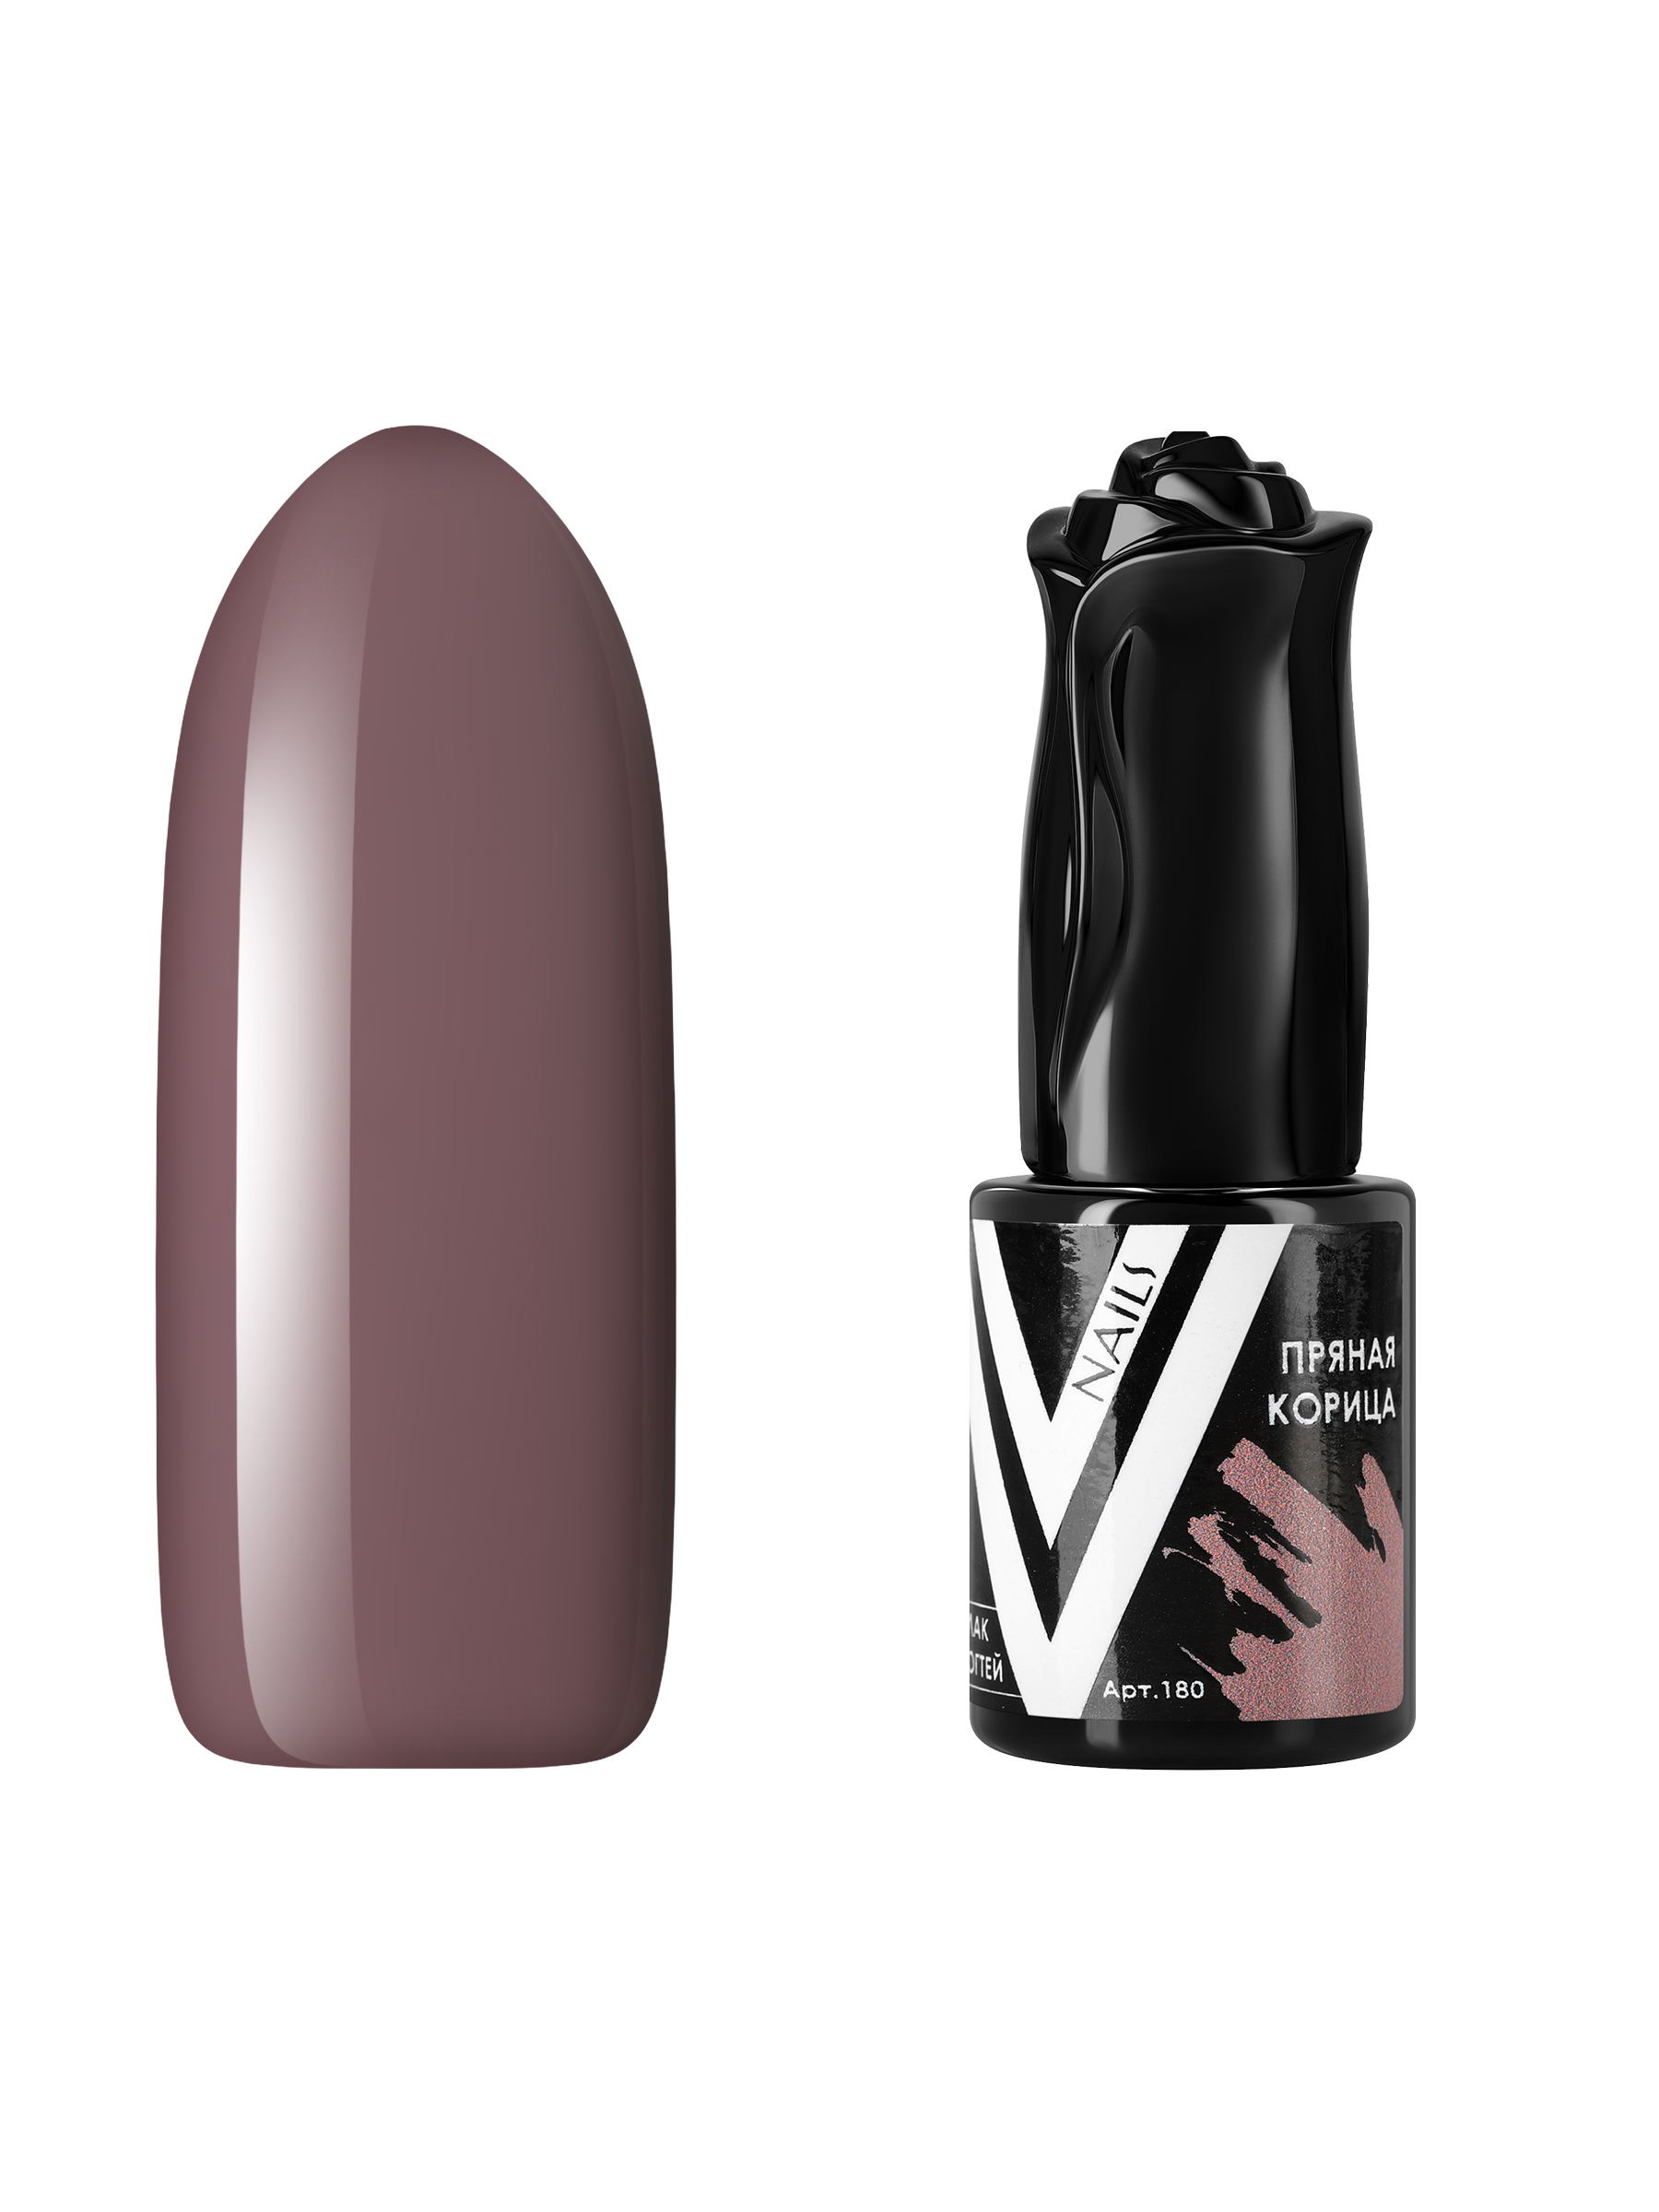 Гель-лак для ногтей Vogue Nails плотный, темный, самовыравнивающийся, бежевый, 10 мл крем краска collage 23001 3 00 темный шатен 60 мл натуральный бежевый коричневый 60 мл